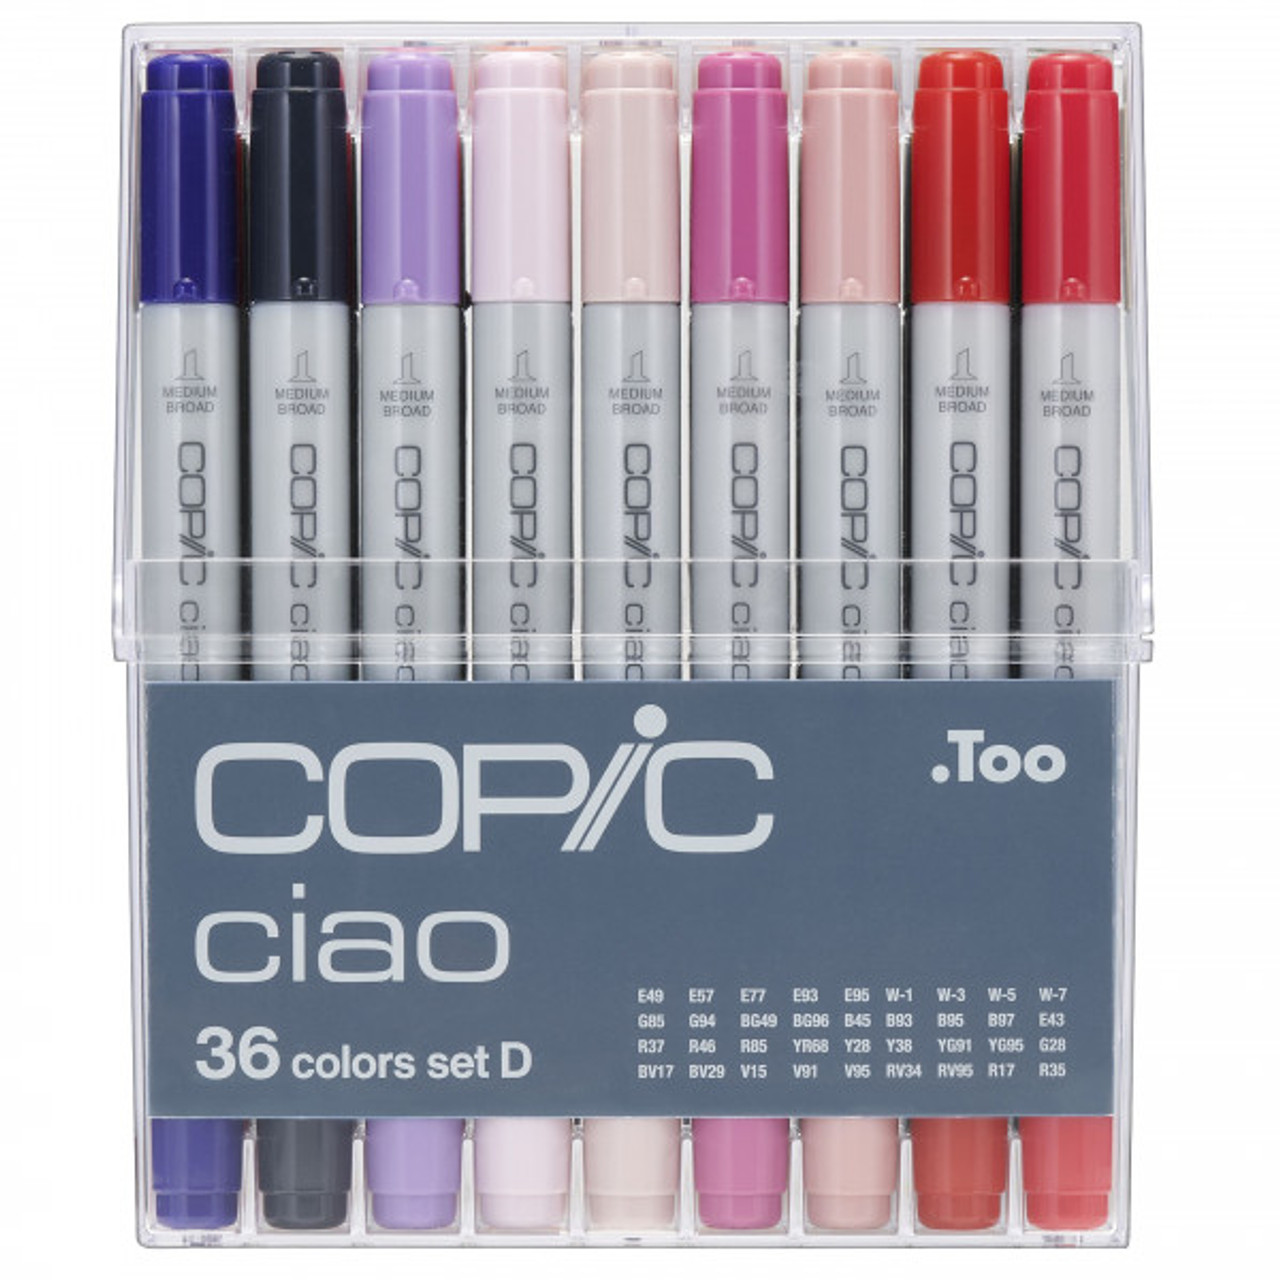 Copic Ciao 36 Pen Set D - Copic Shop